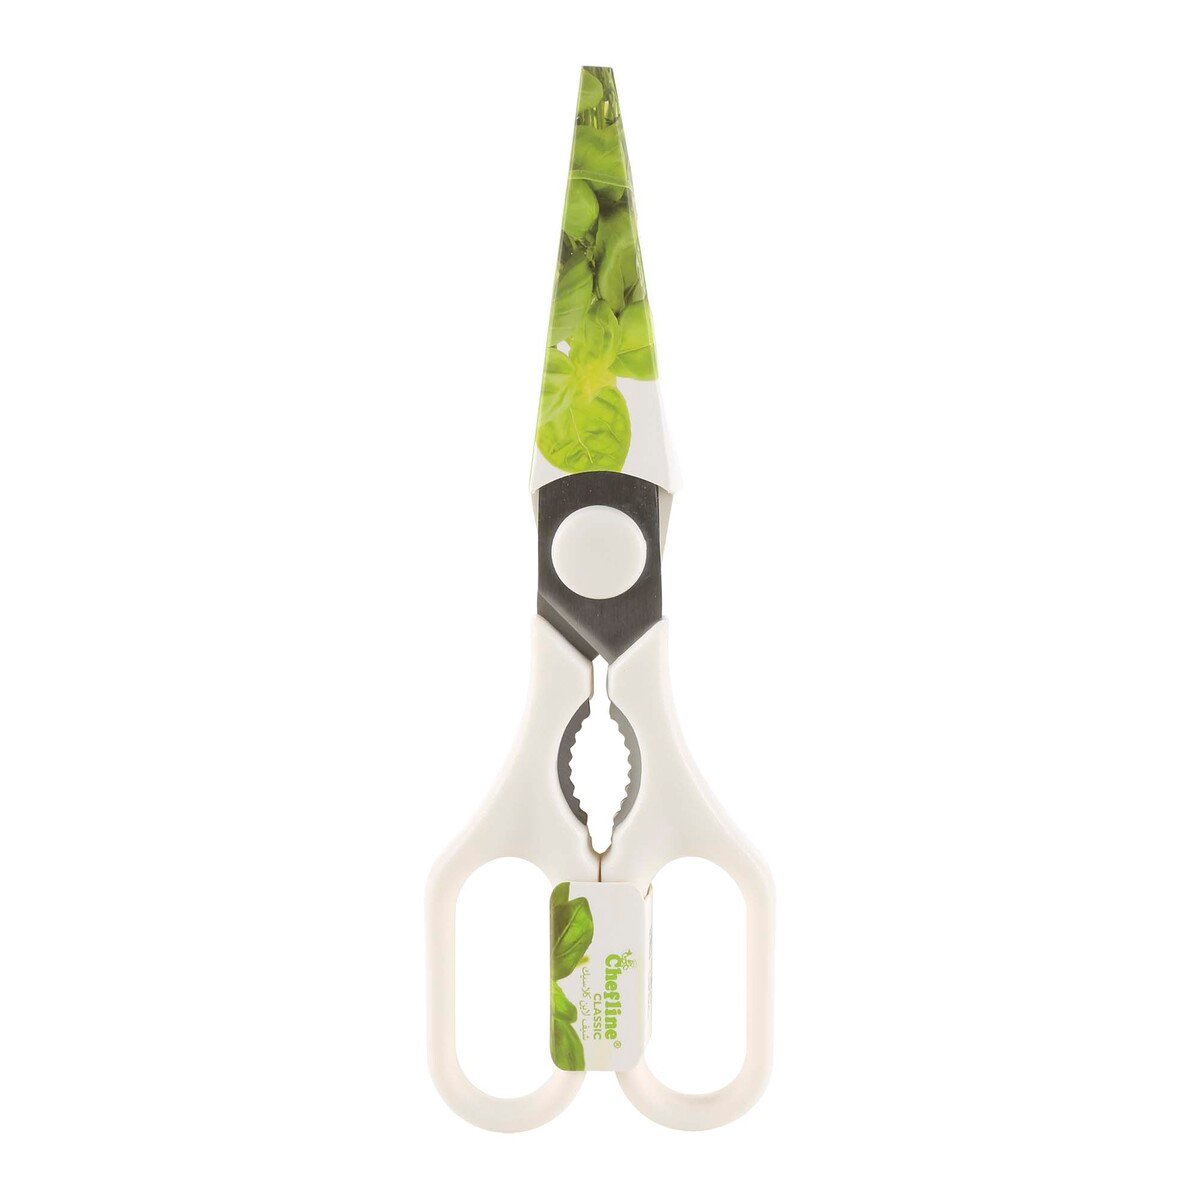 Chefline Kitchen Scissors, HB6117CS